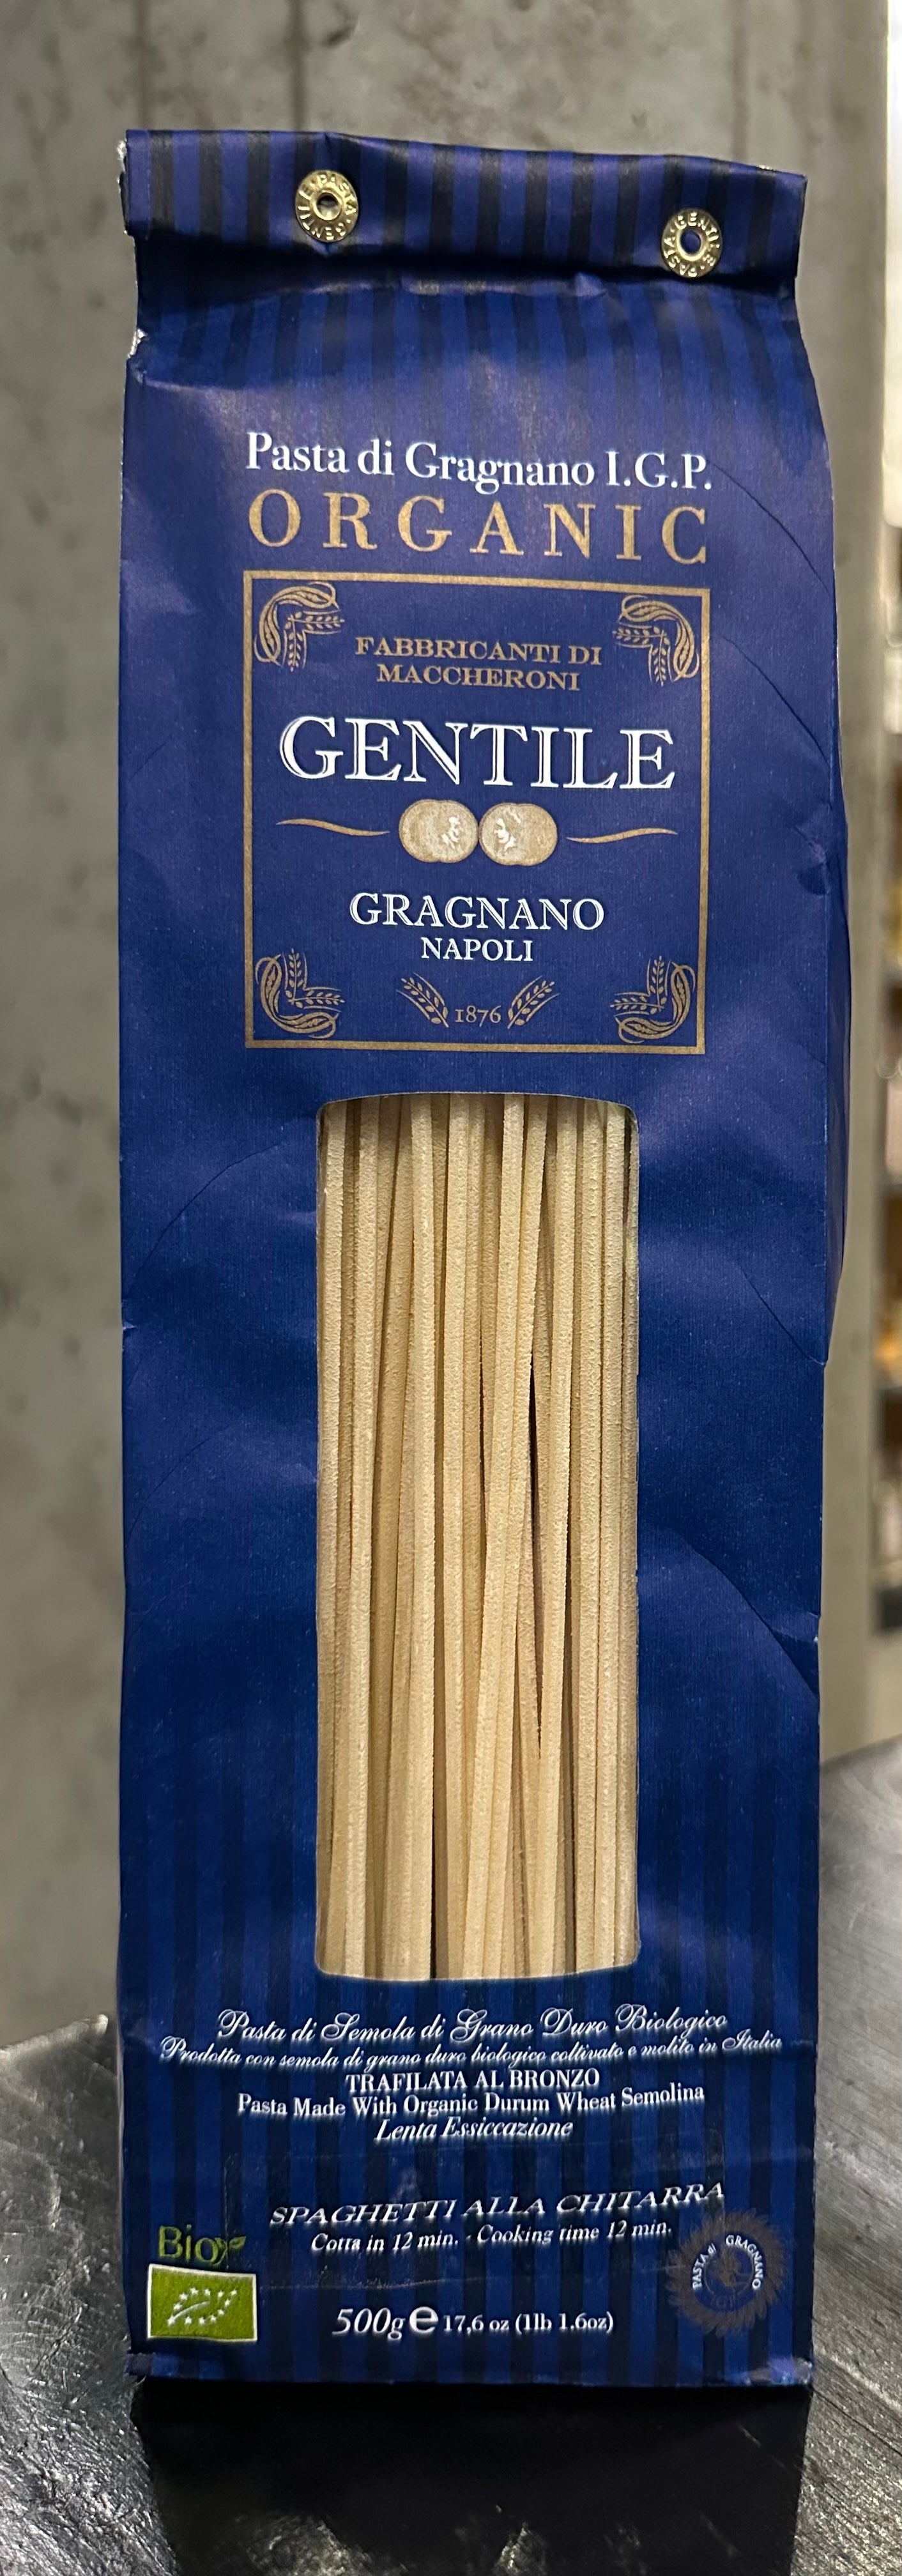 Gentili "Spaghetti alla Chitarra" Pasta di Gragnano I.G.P.